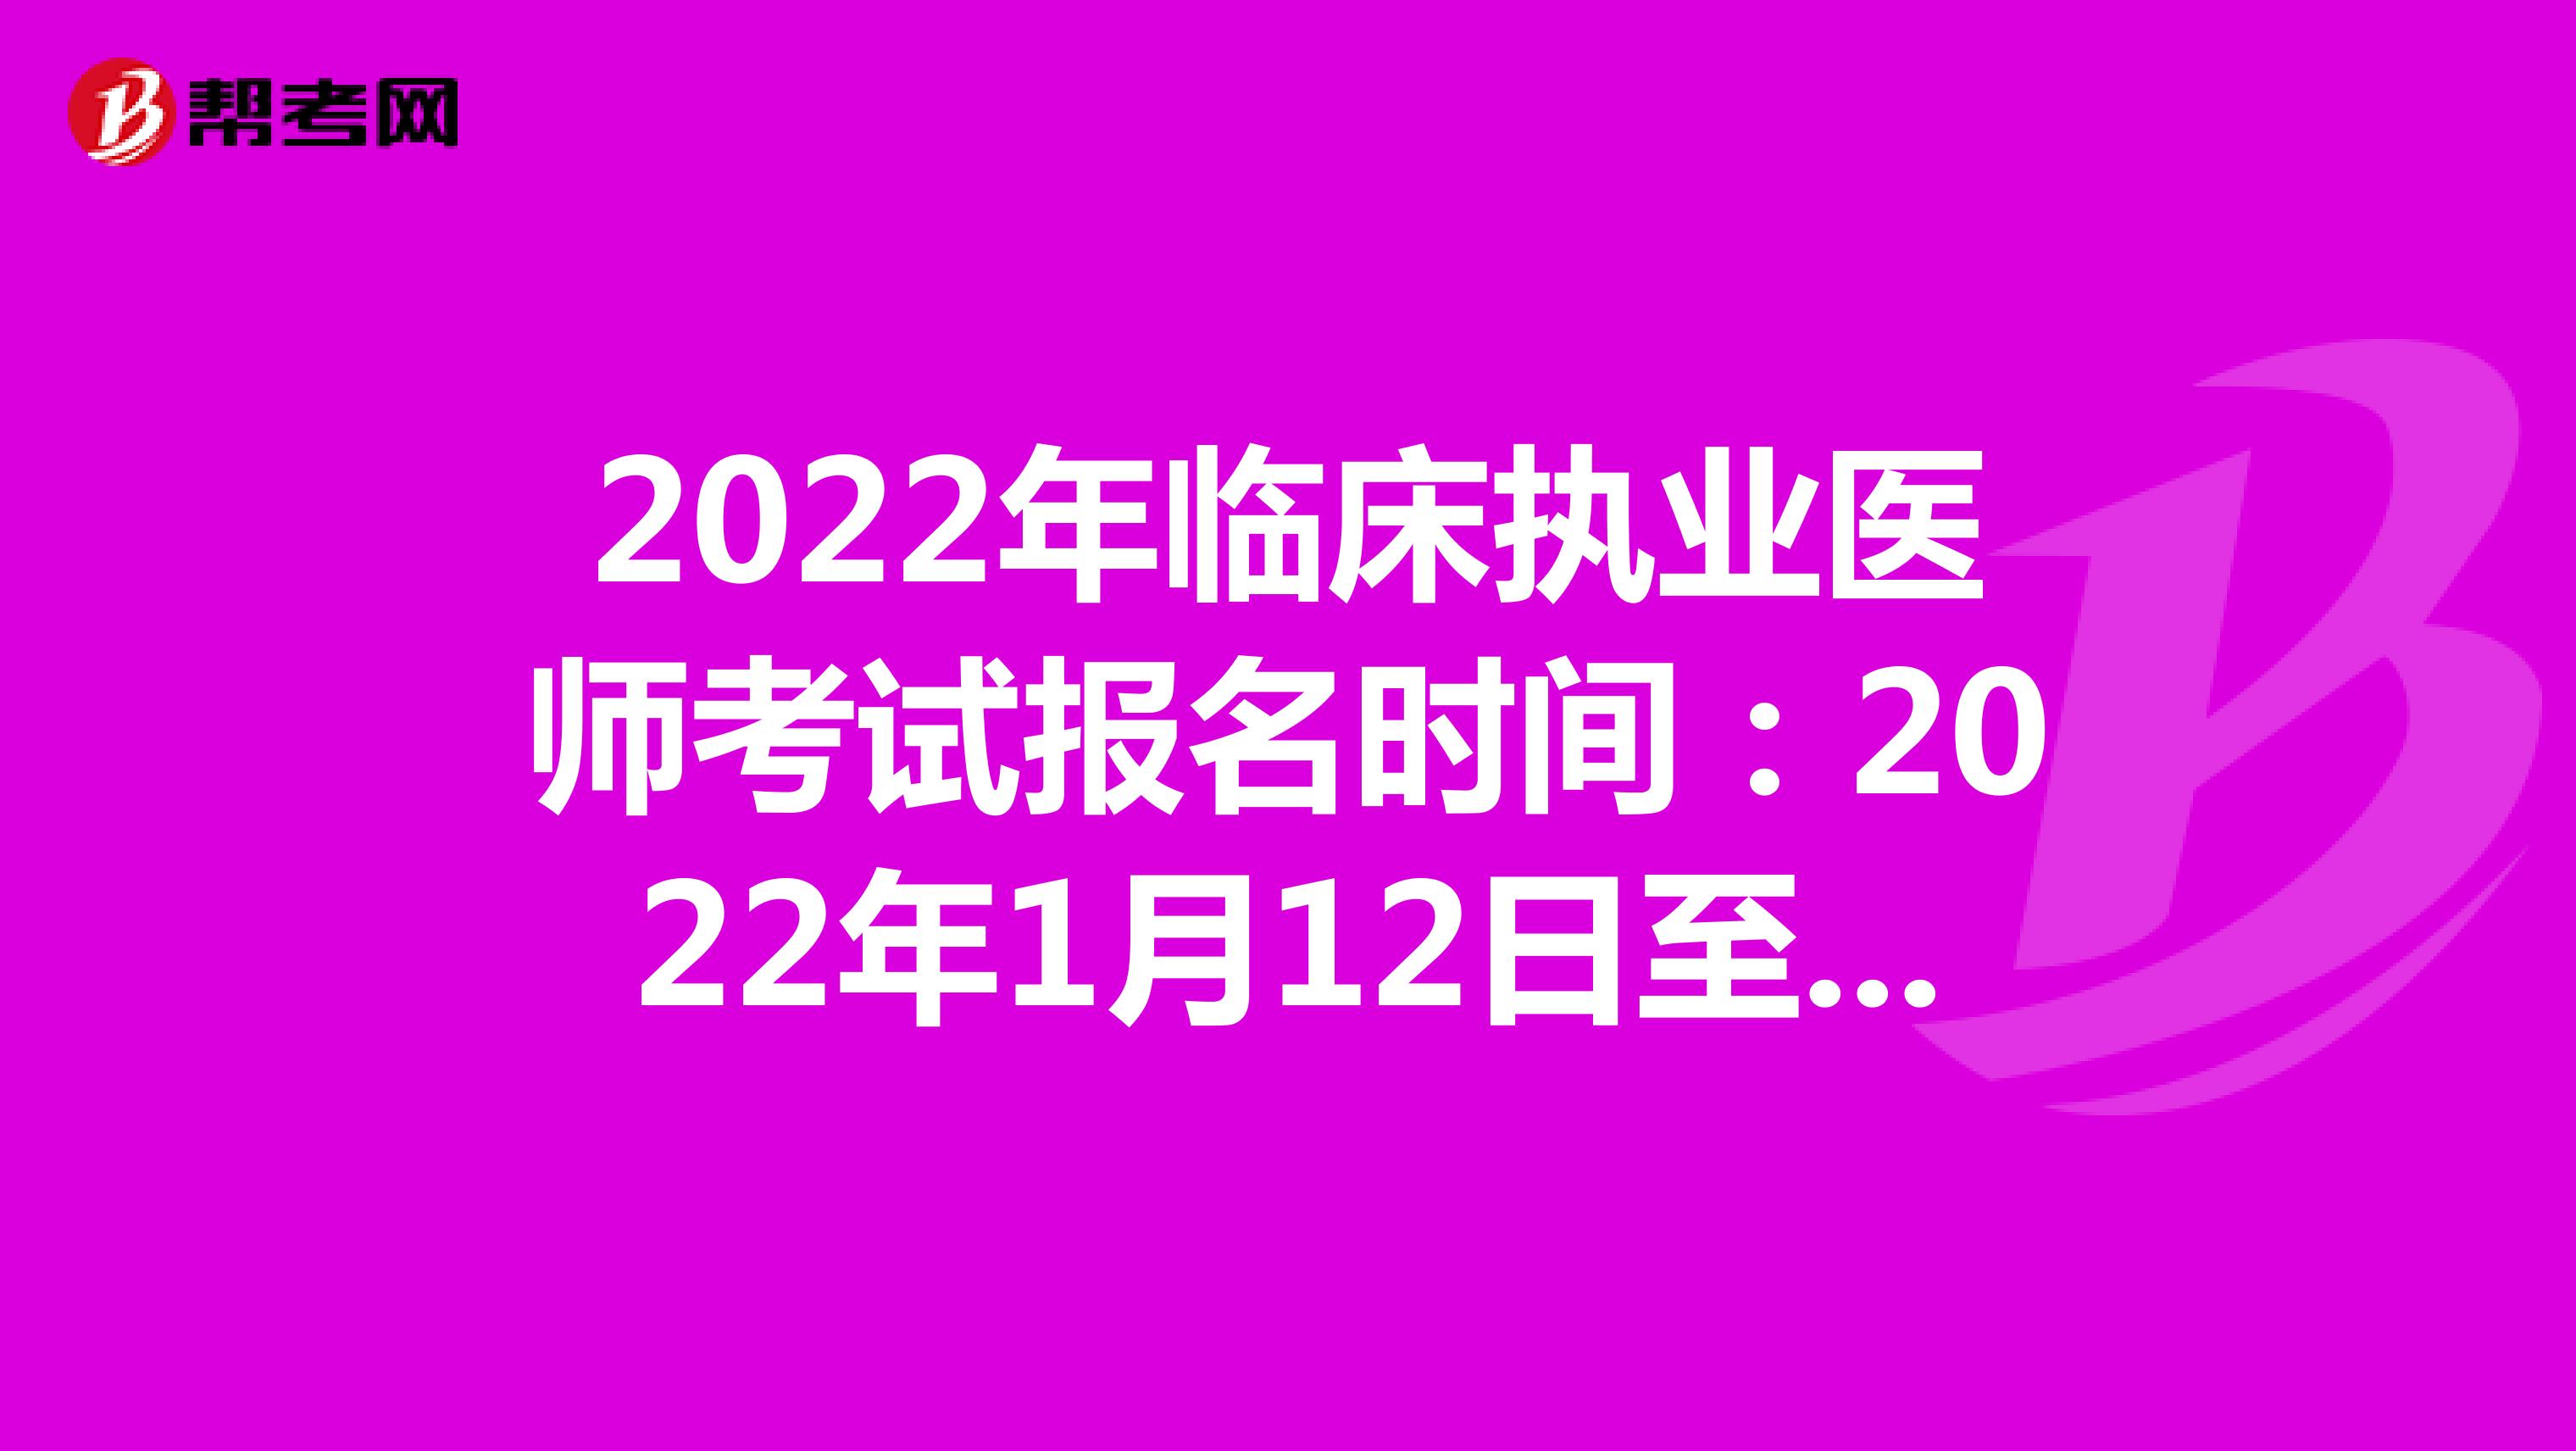 2022年临床执业医师考试报名时间：2022年1月12日至1月25日